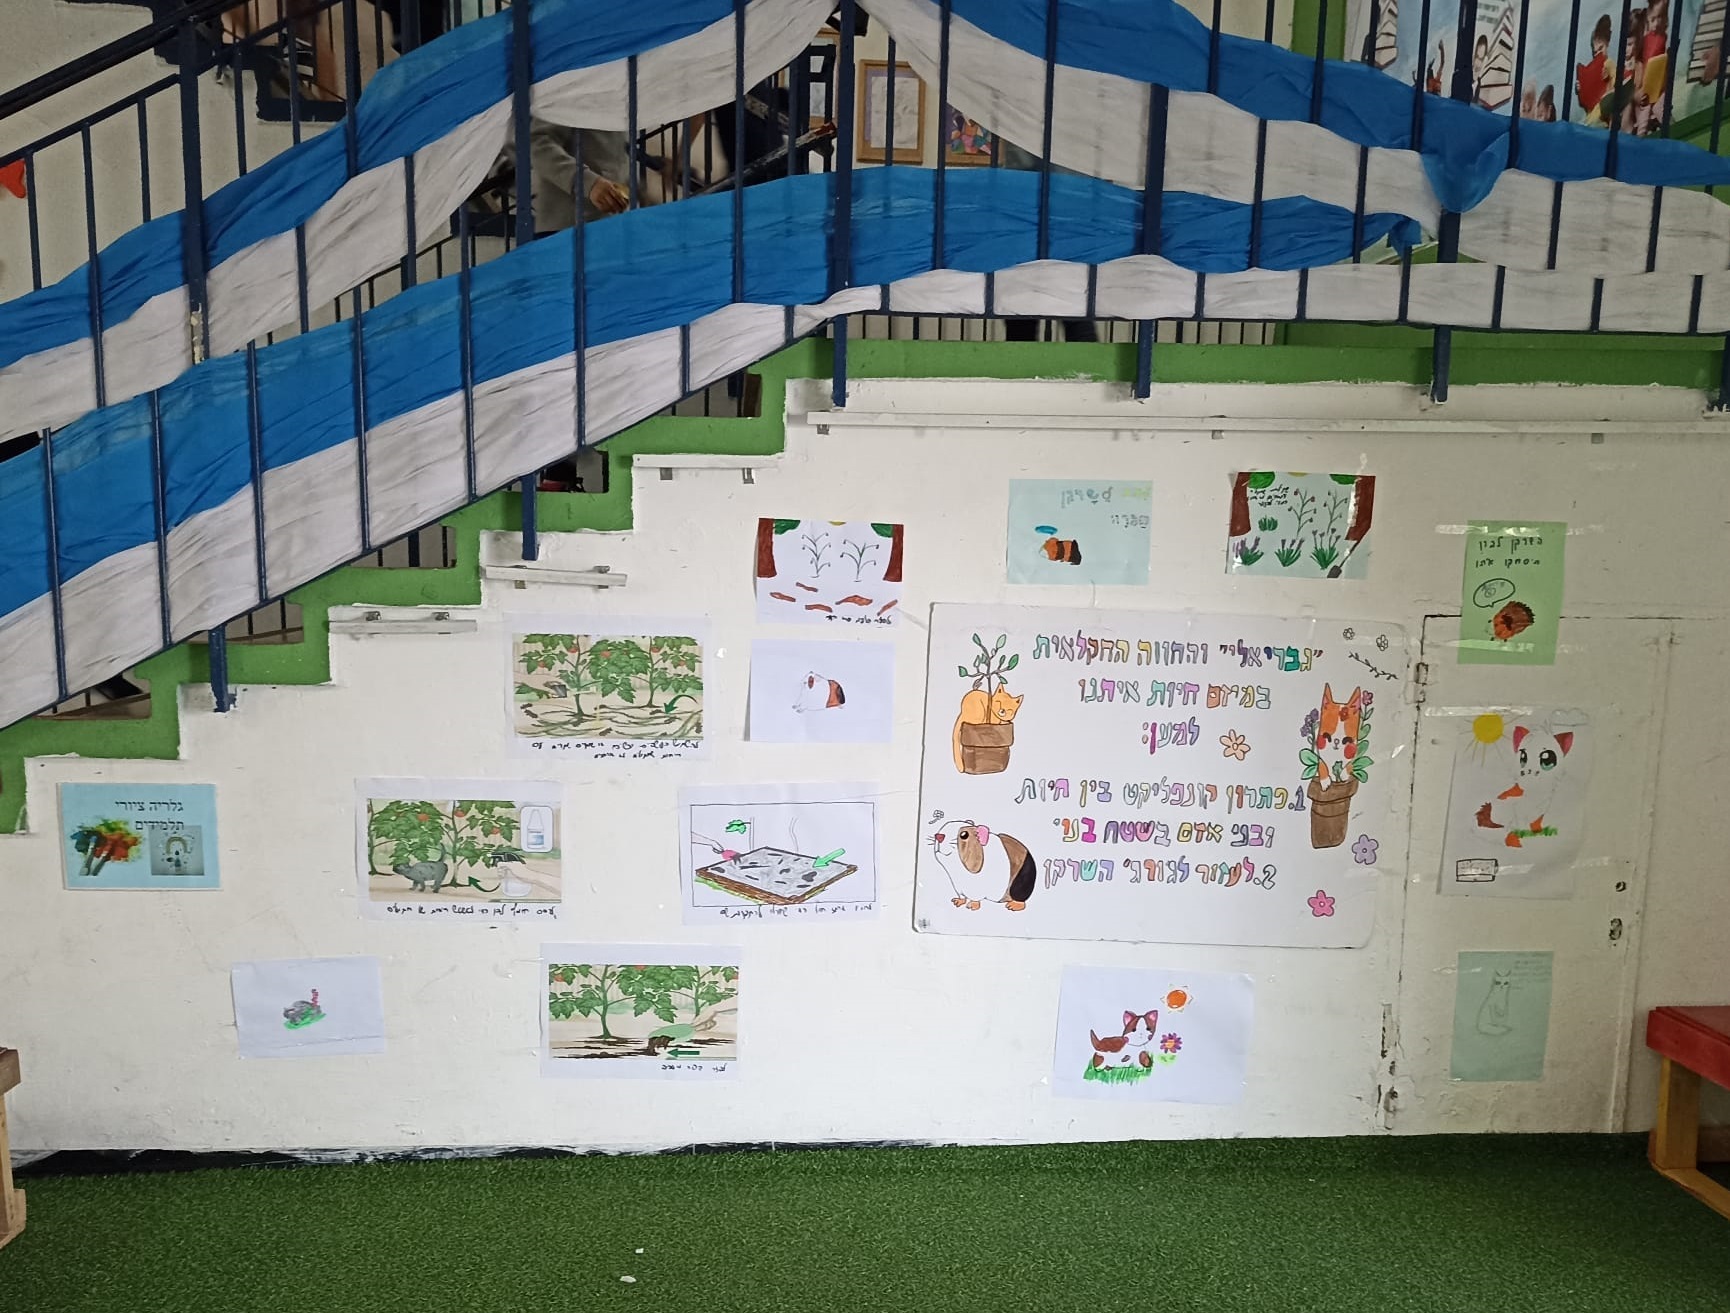 קיר הסברה  בבית-ספר גבריאלי, חיפה (צילום: שרה און)